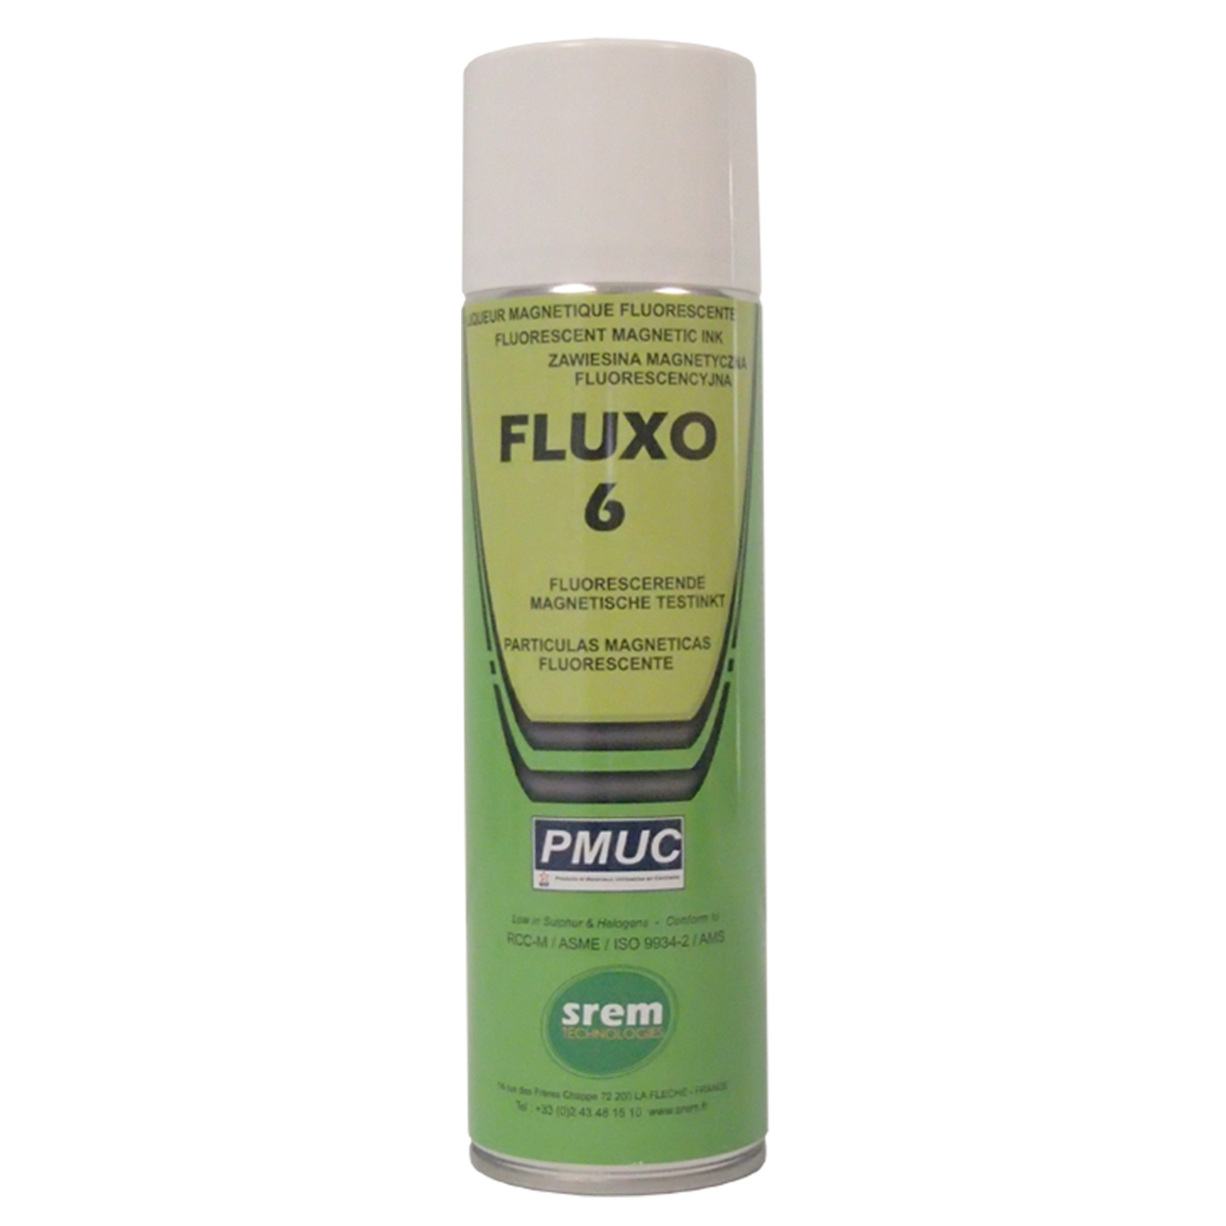 Fluxo 6